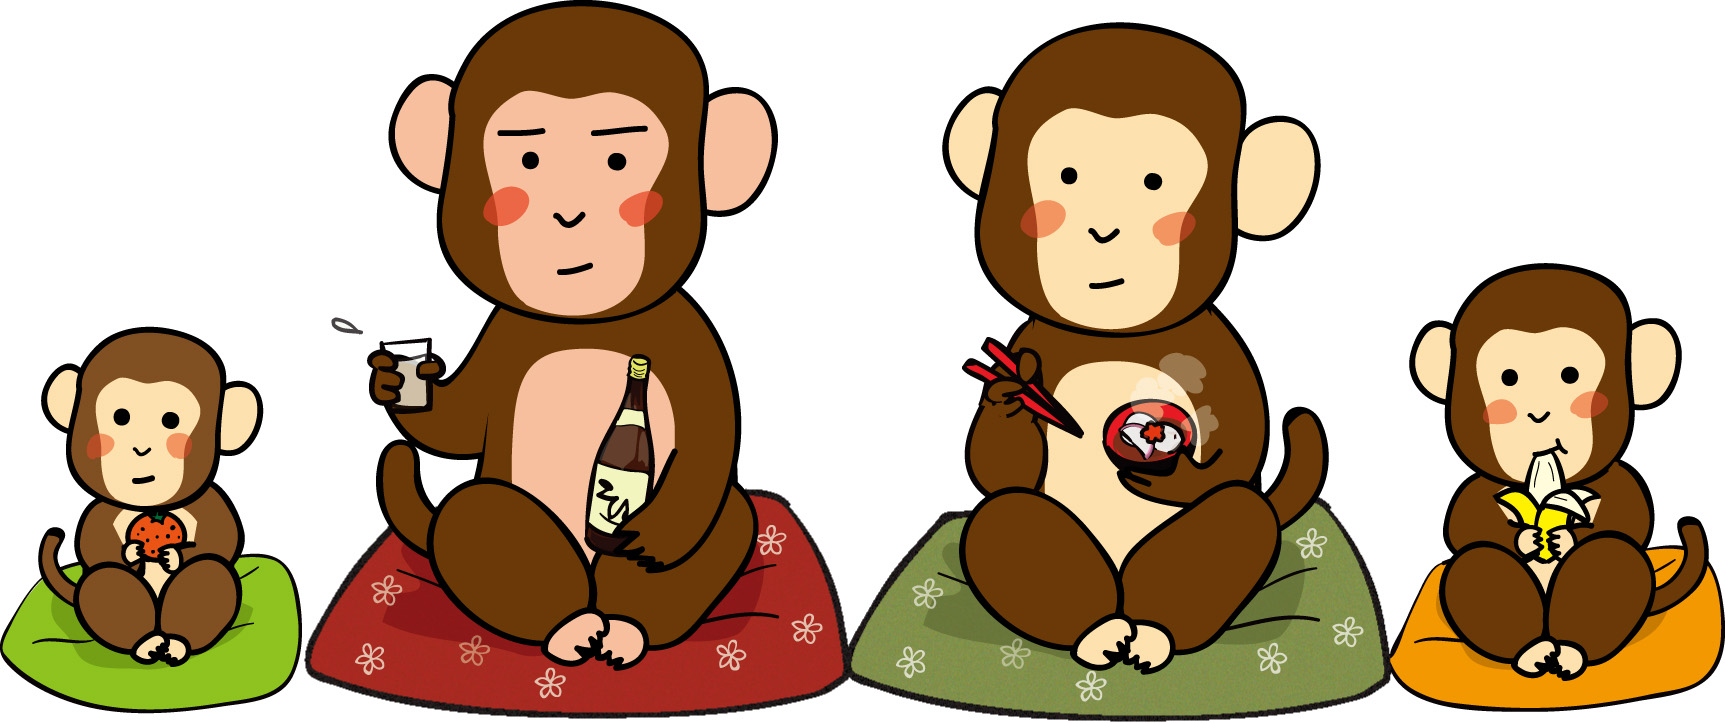 年賀状イラスト素材 申 さる お猿のファミリーダウンロード かわいい無料イラスト 年賀素材館